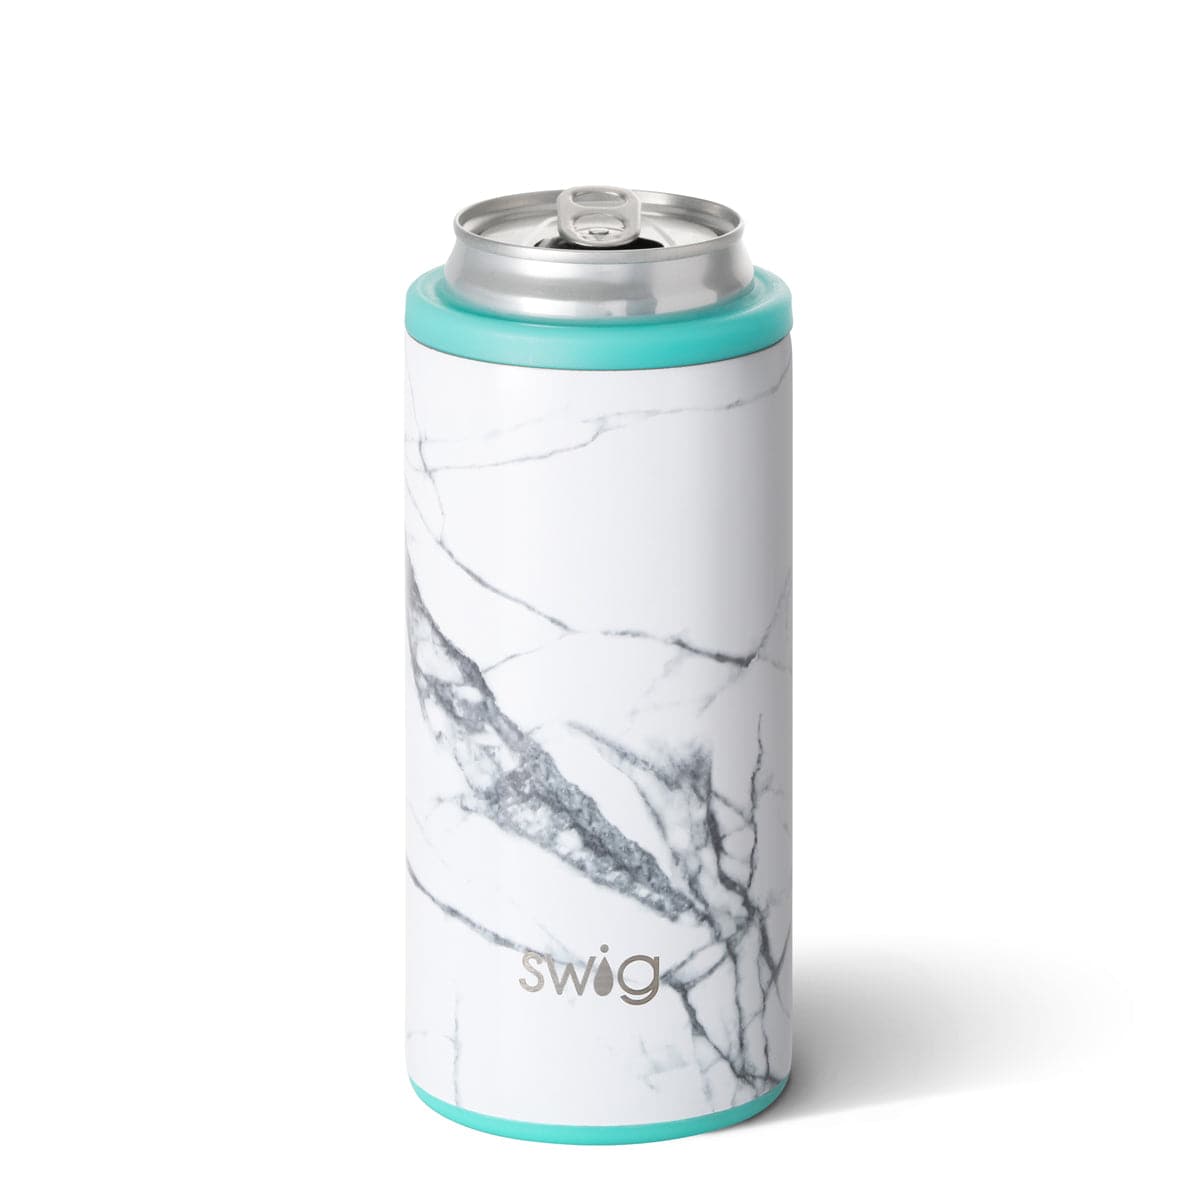 Swig - 12oz Skinny Can Cooler - Findlay Rowe Designs